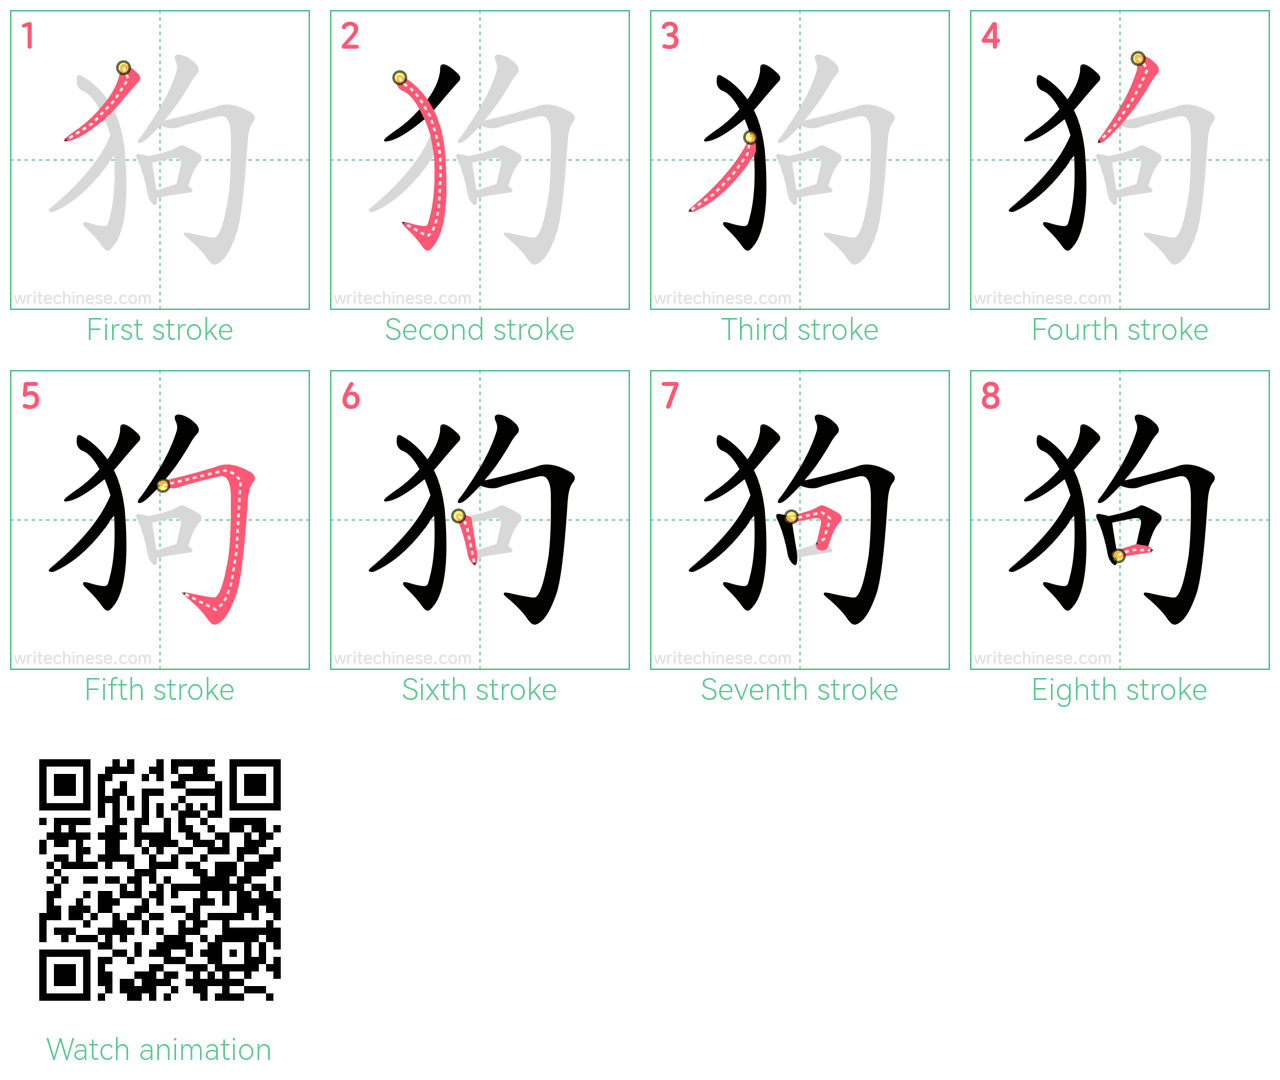 狗 step-by-step stroke order diagrams